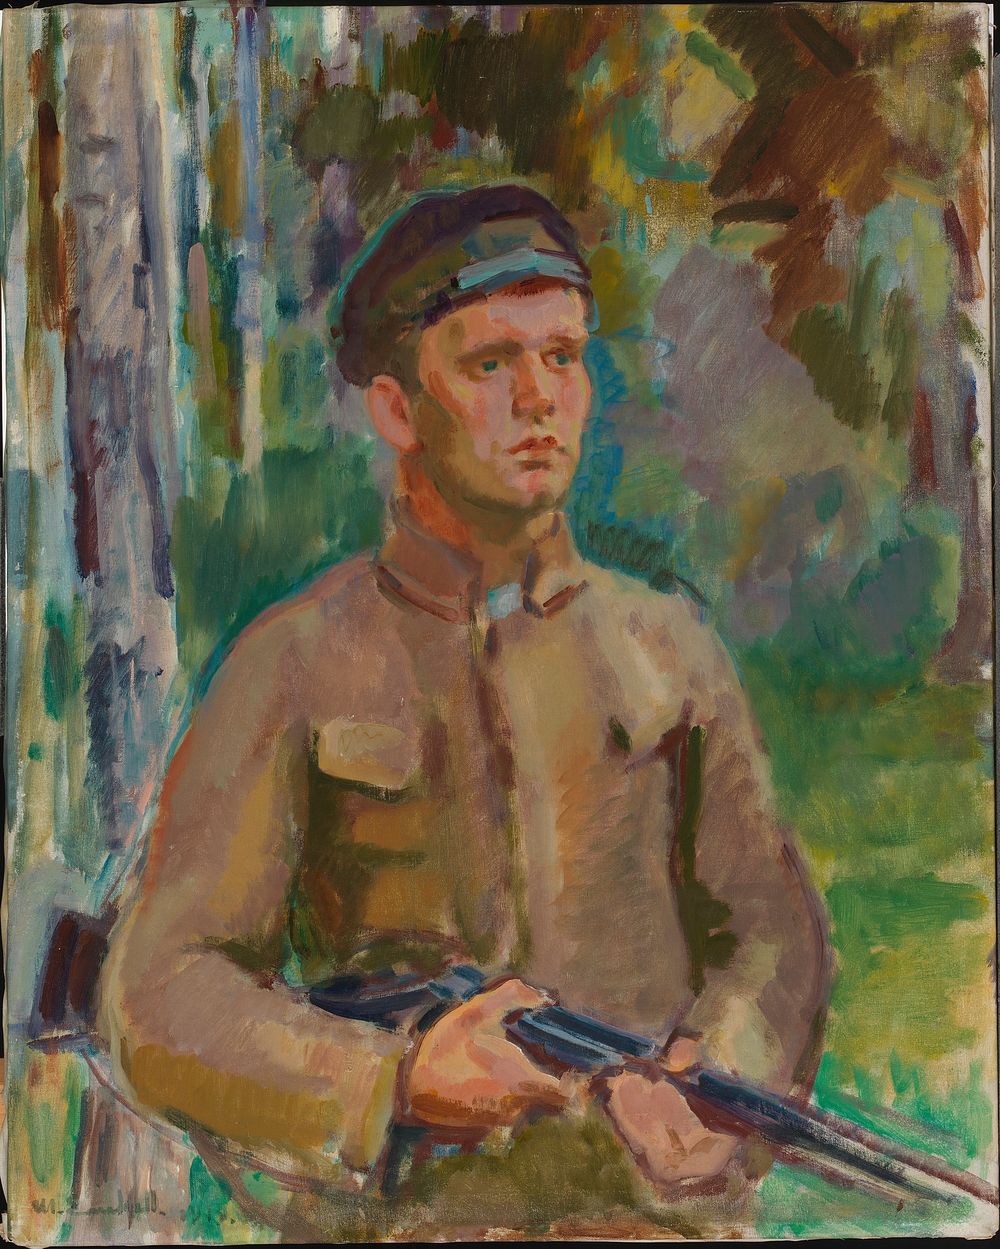 Hunter (forester gunnar arnkil), 1919, by Magnus Enckell